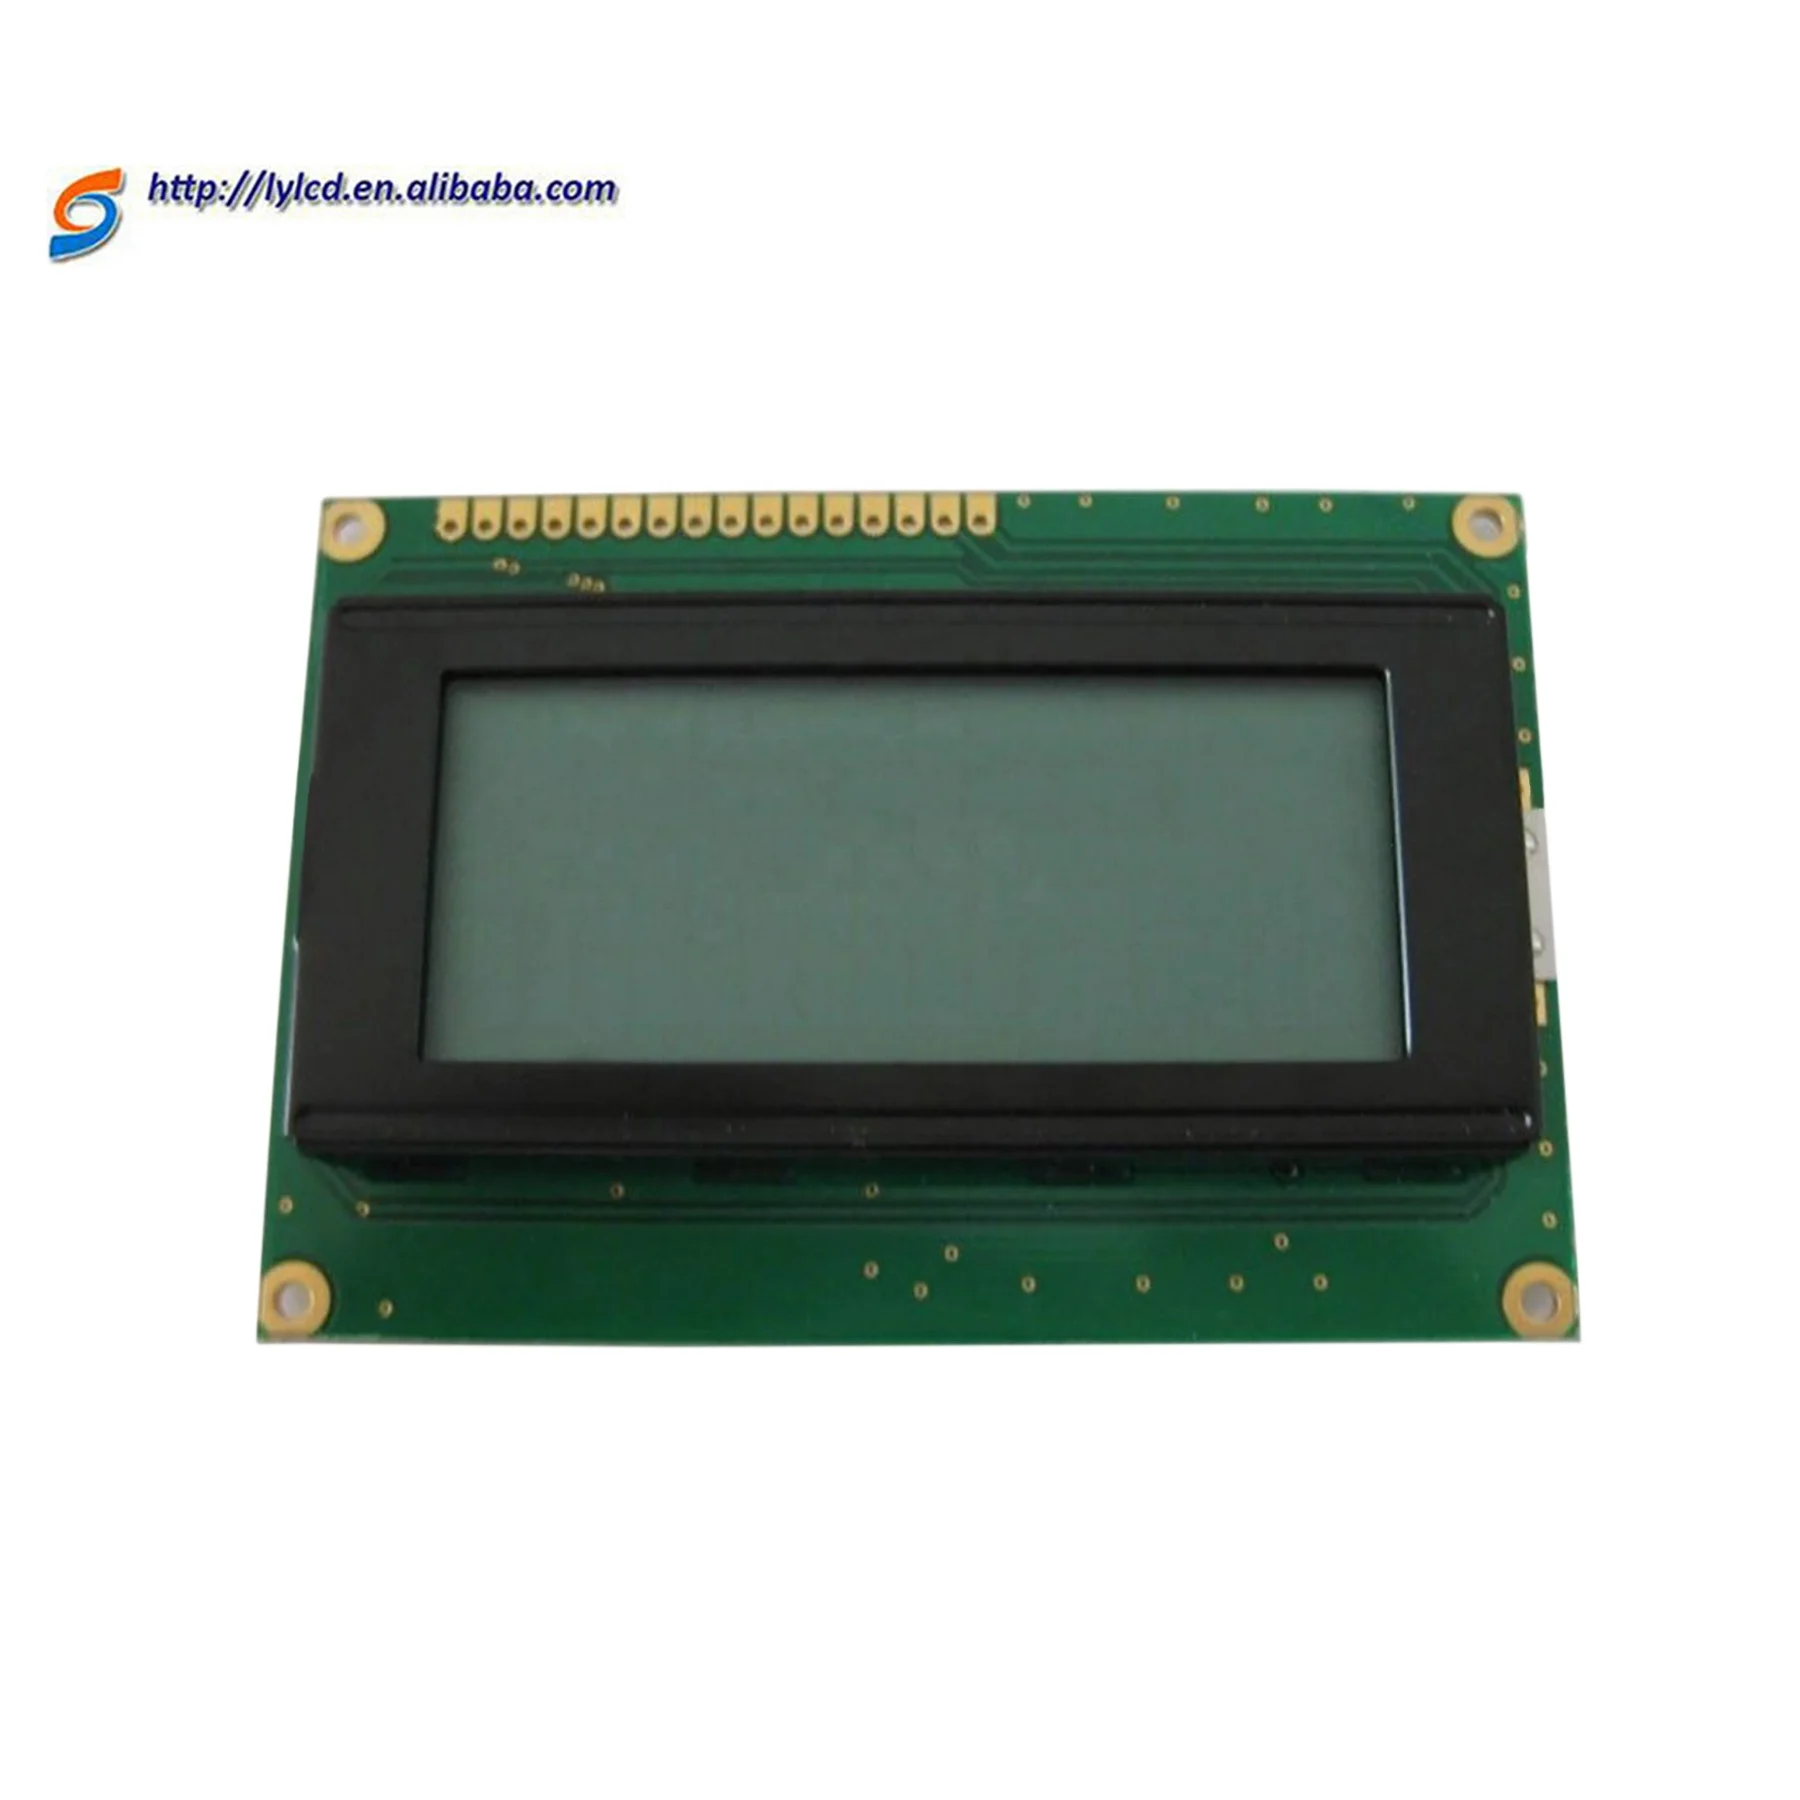 160x160 and 128x128 lcd display 19 pin lcd display module (62307782825)